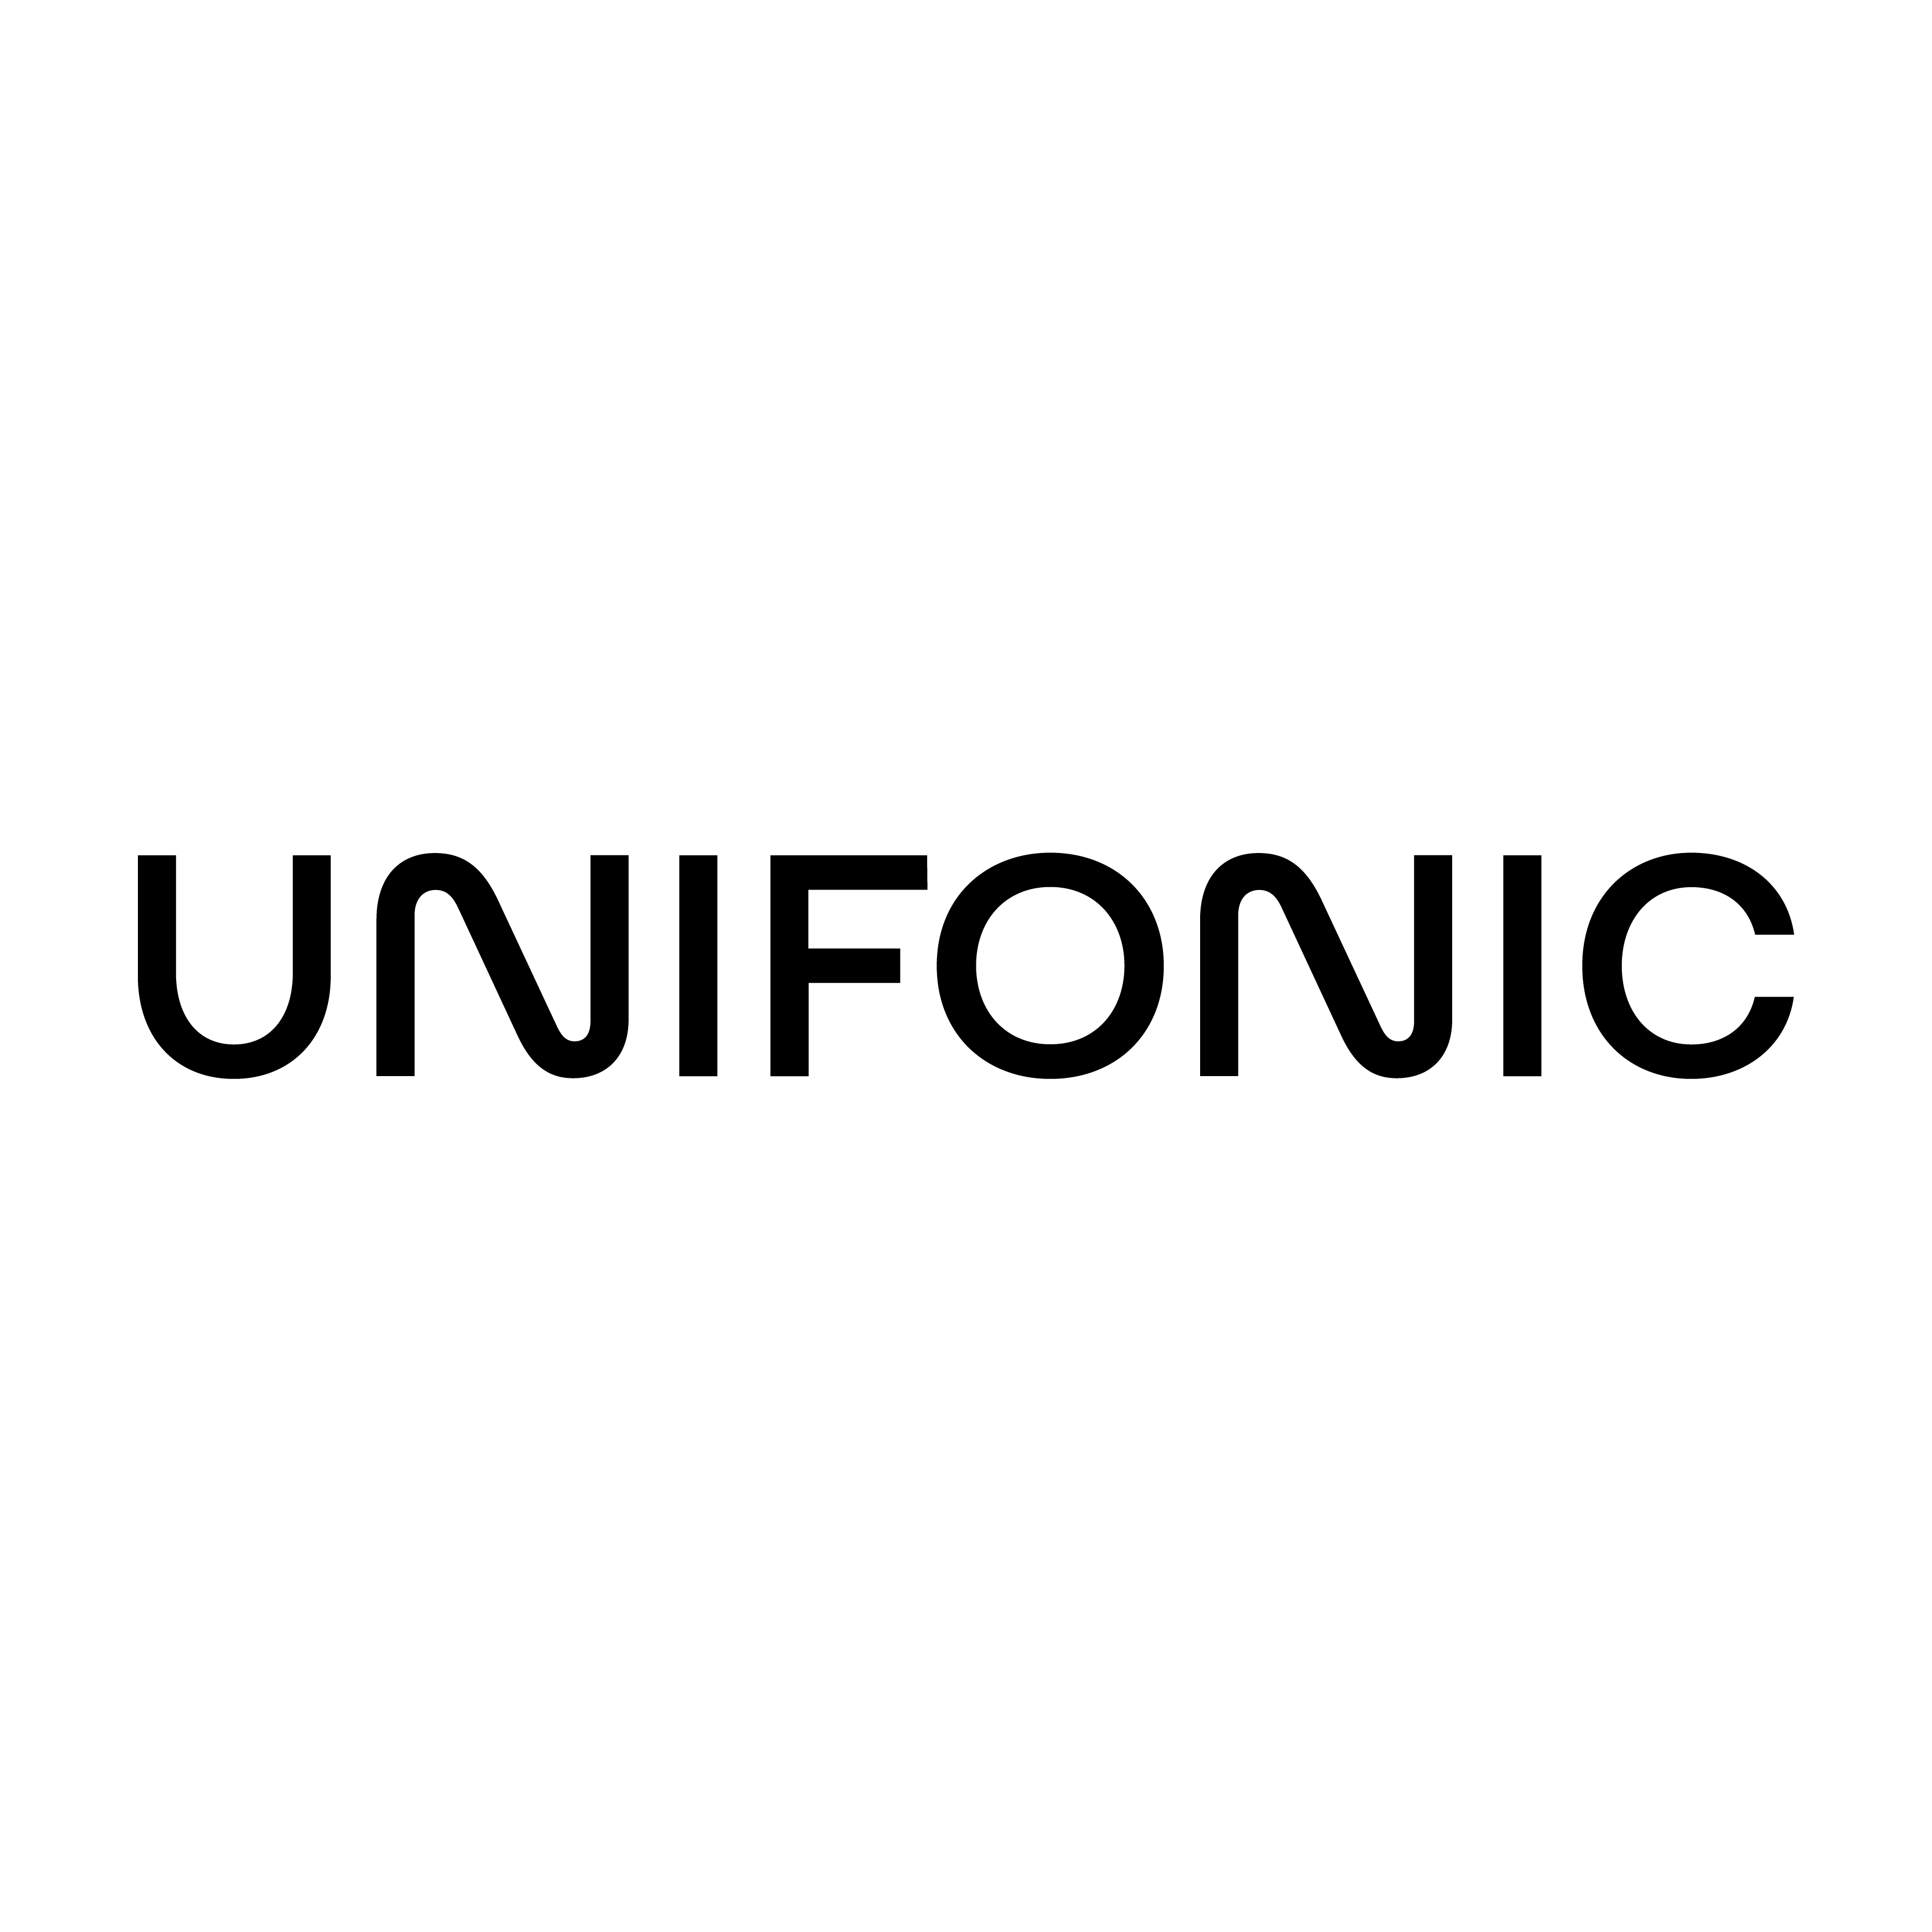 L'agenzia Cactix di Dubai, Dubai, United Arab Emirates ha aiutato Unifonic a far crescere il suo business con la SEO e il digital marketing